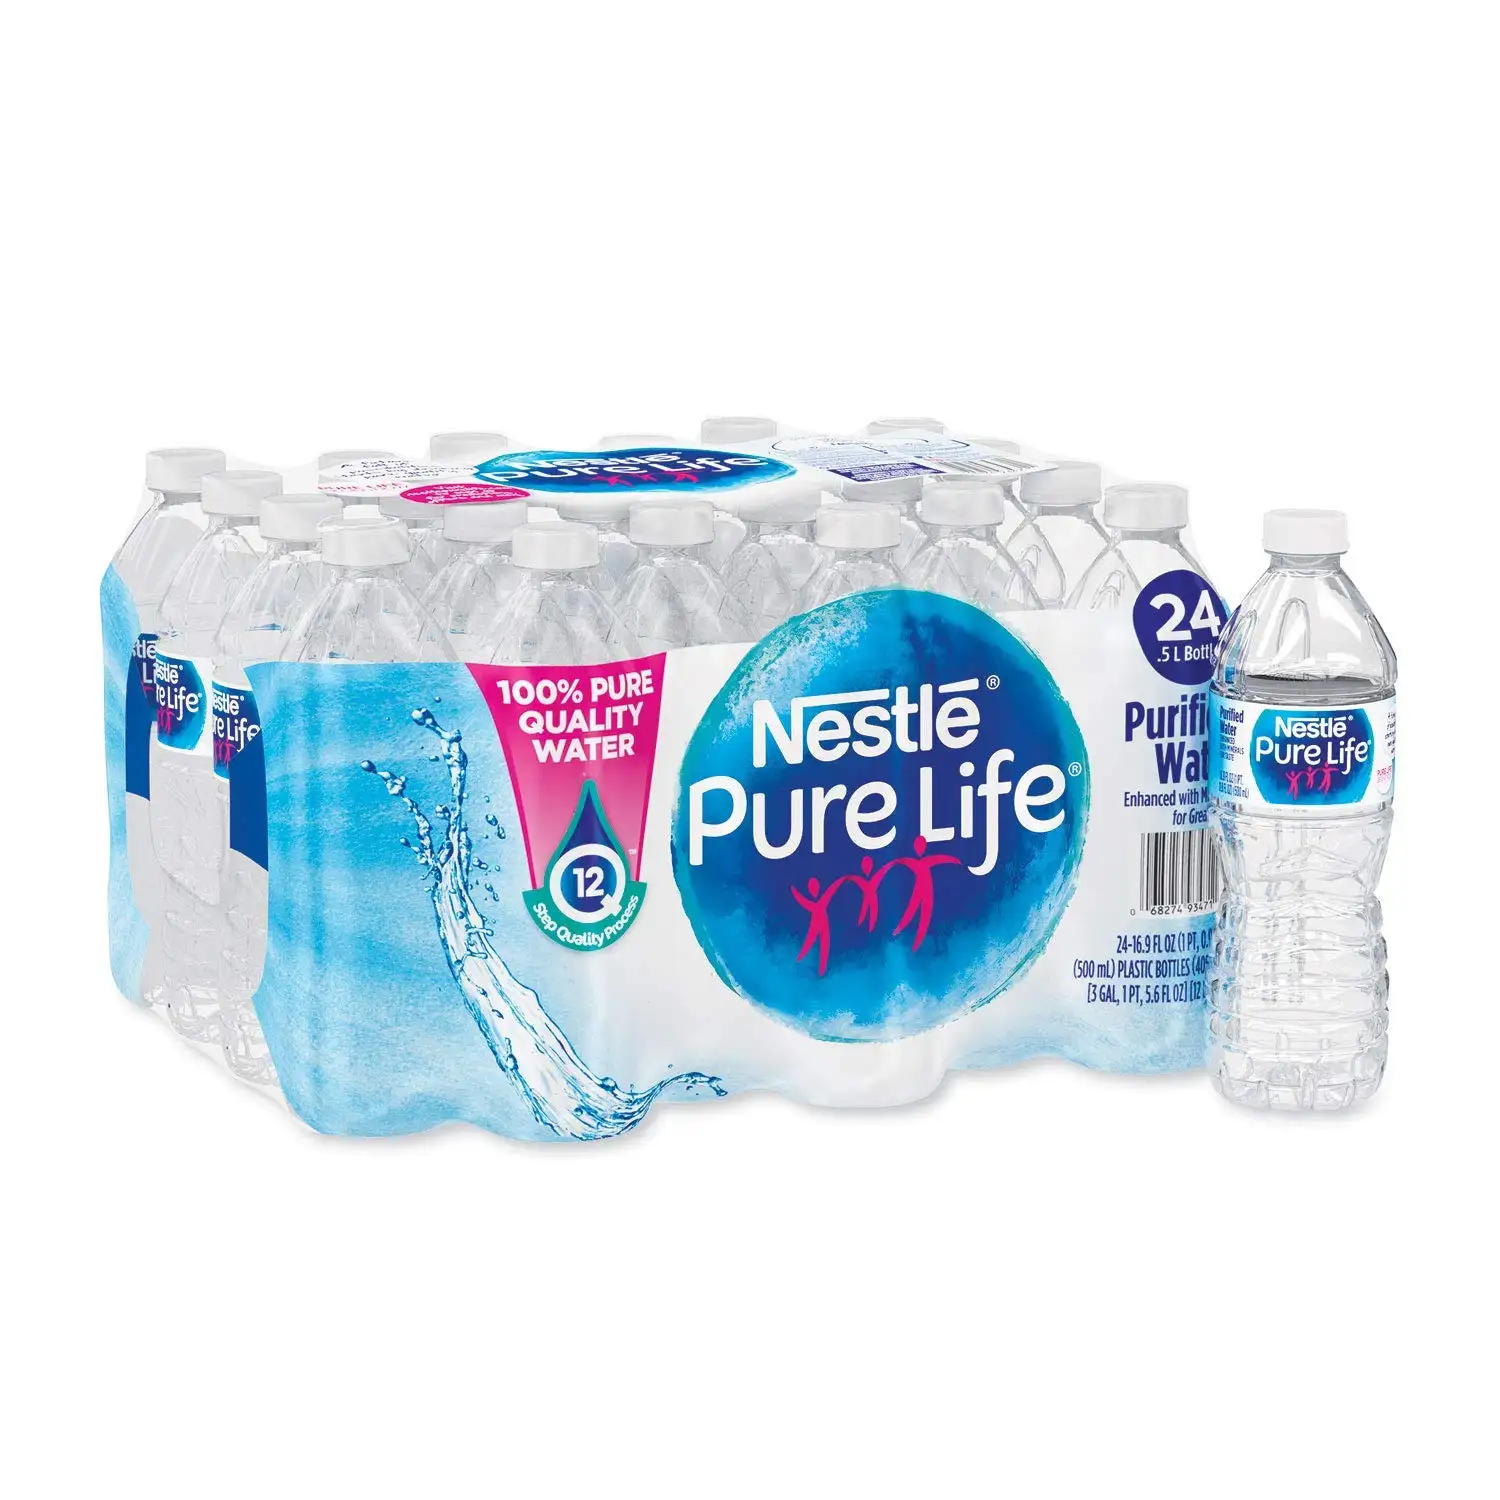 Compre Nestlé - Pure Life água potável engarrafada - garrafas de 12 x 1,5 Ltr ao melhor preço